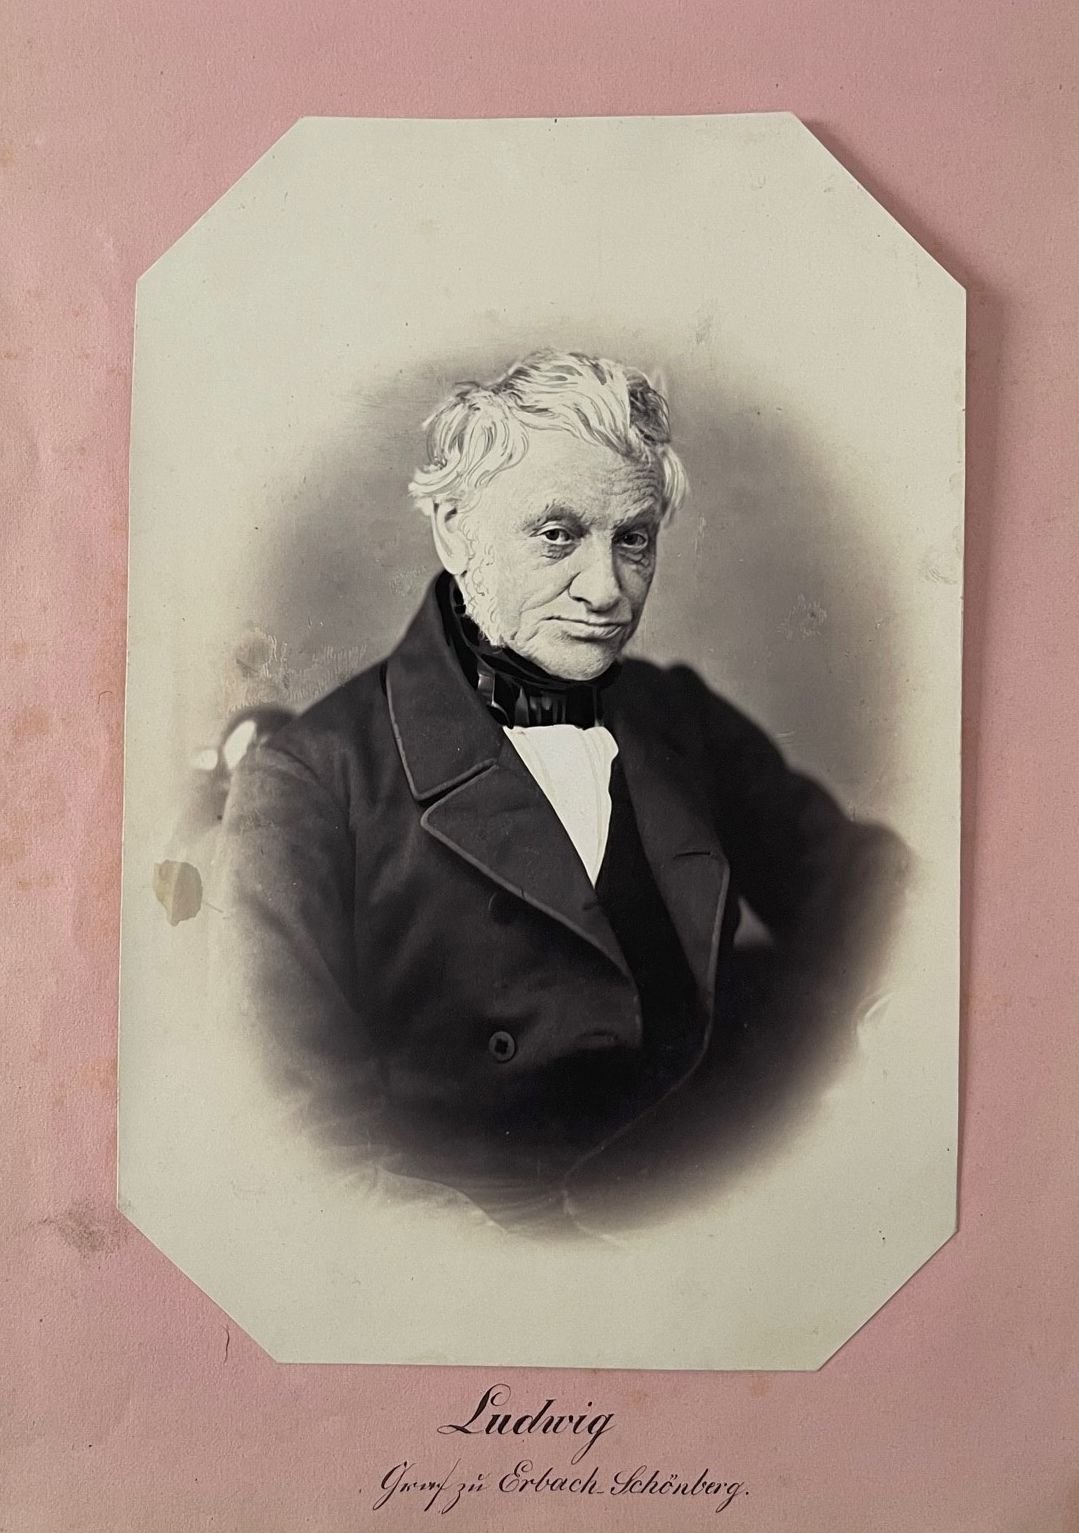 Fotografie, Unbekannter Fotograf, Ludwg von Erbach-Schönberg, ca. 1860 (Taunus-Rhein-Main - Regionalgeschichtliche Sammlung Dr. Stefan Naas CC BY-NC-SA)